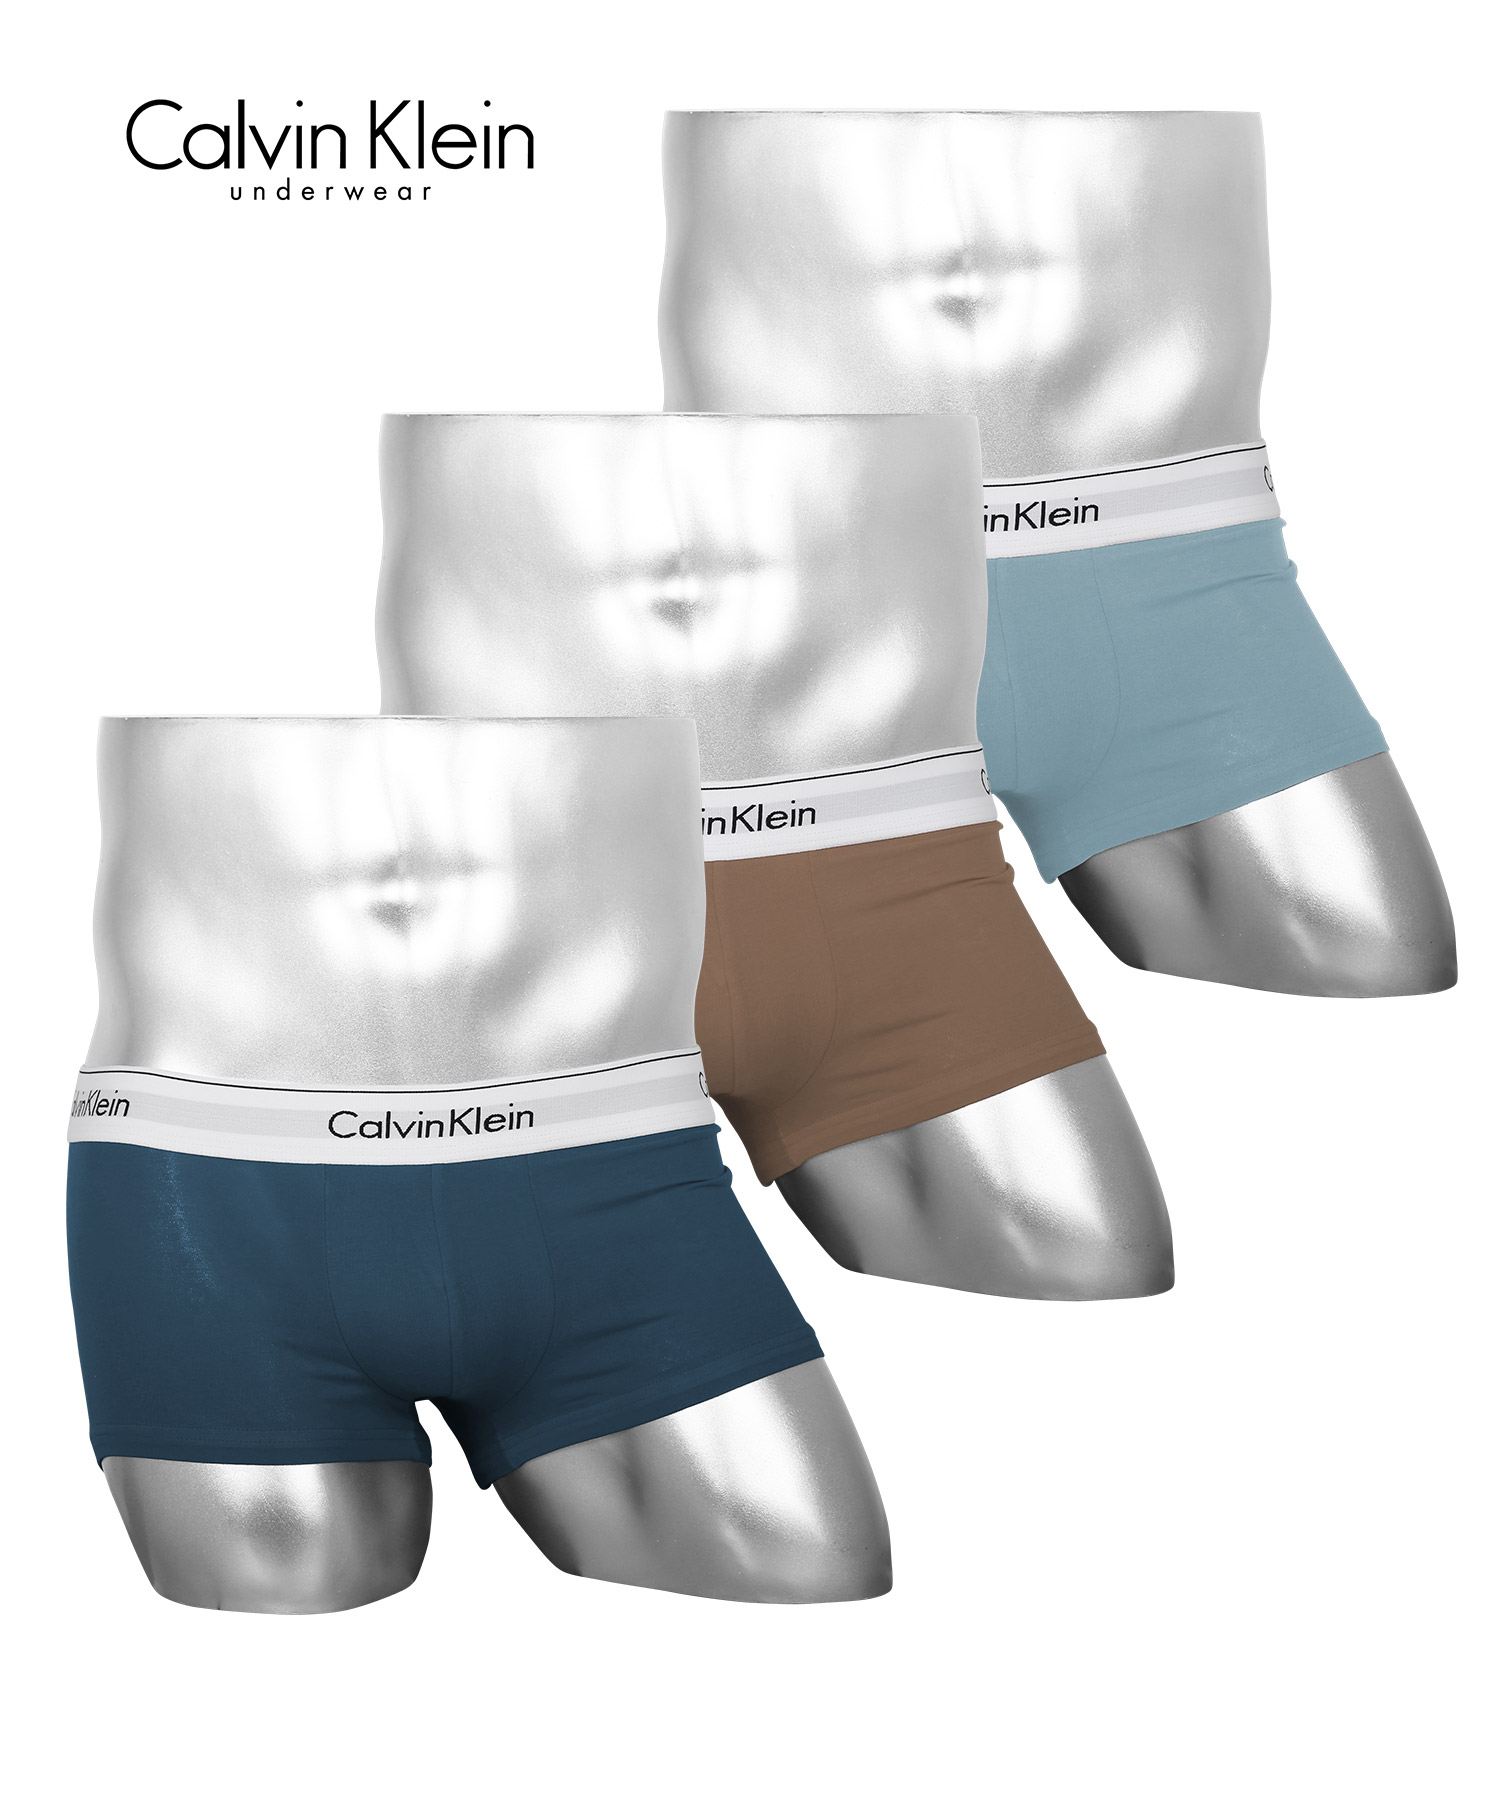 カルバンクライン ボクサーパンツ 3枚セット メンズ Calvin Klein アンダーウェア 男性下着 コットン CK 父の日